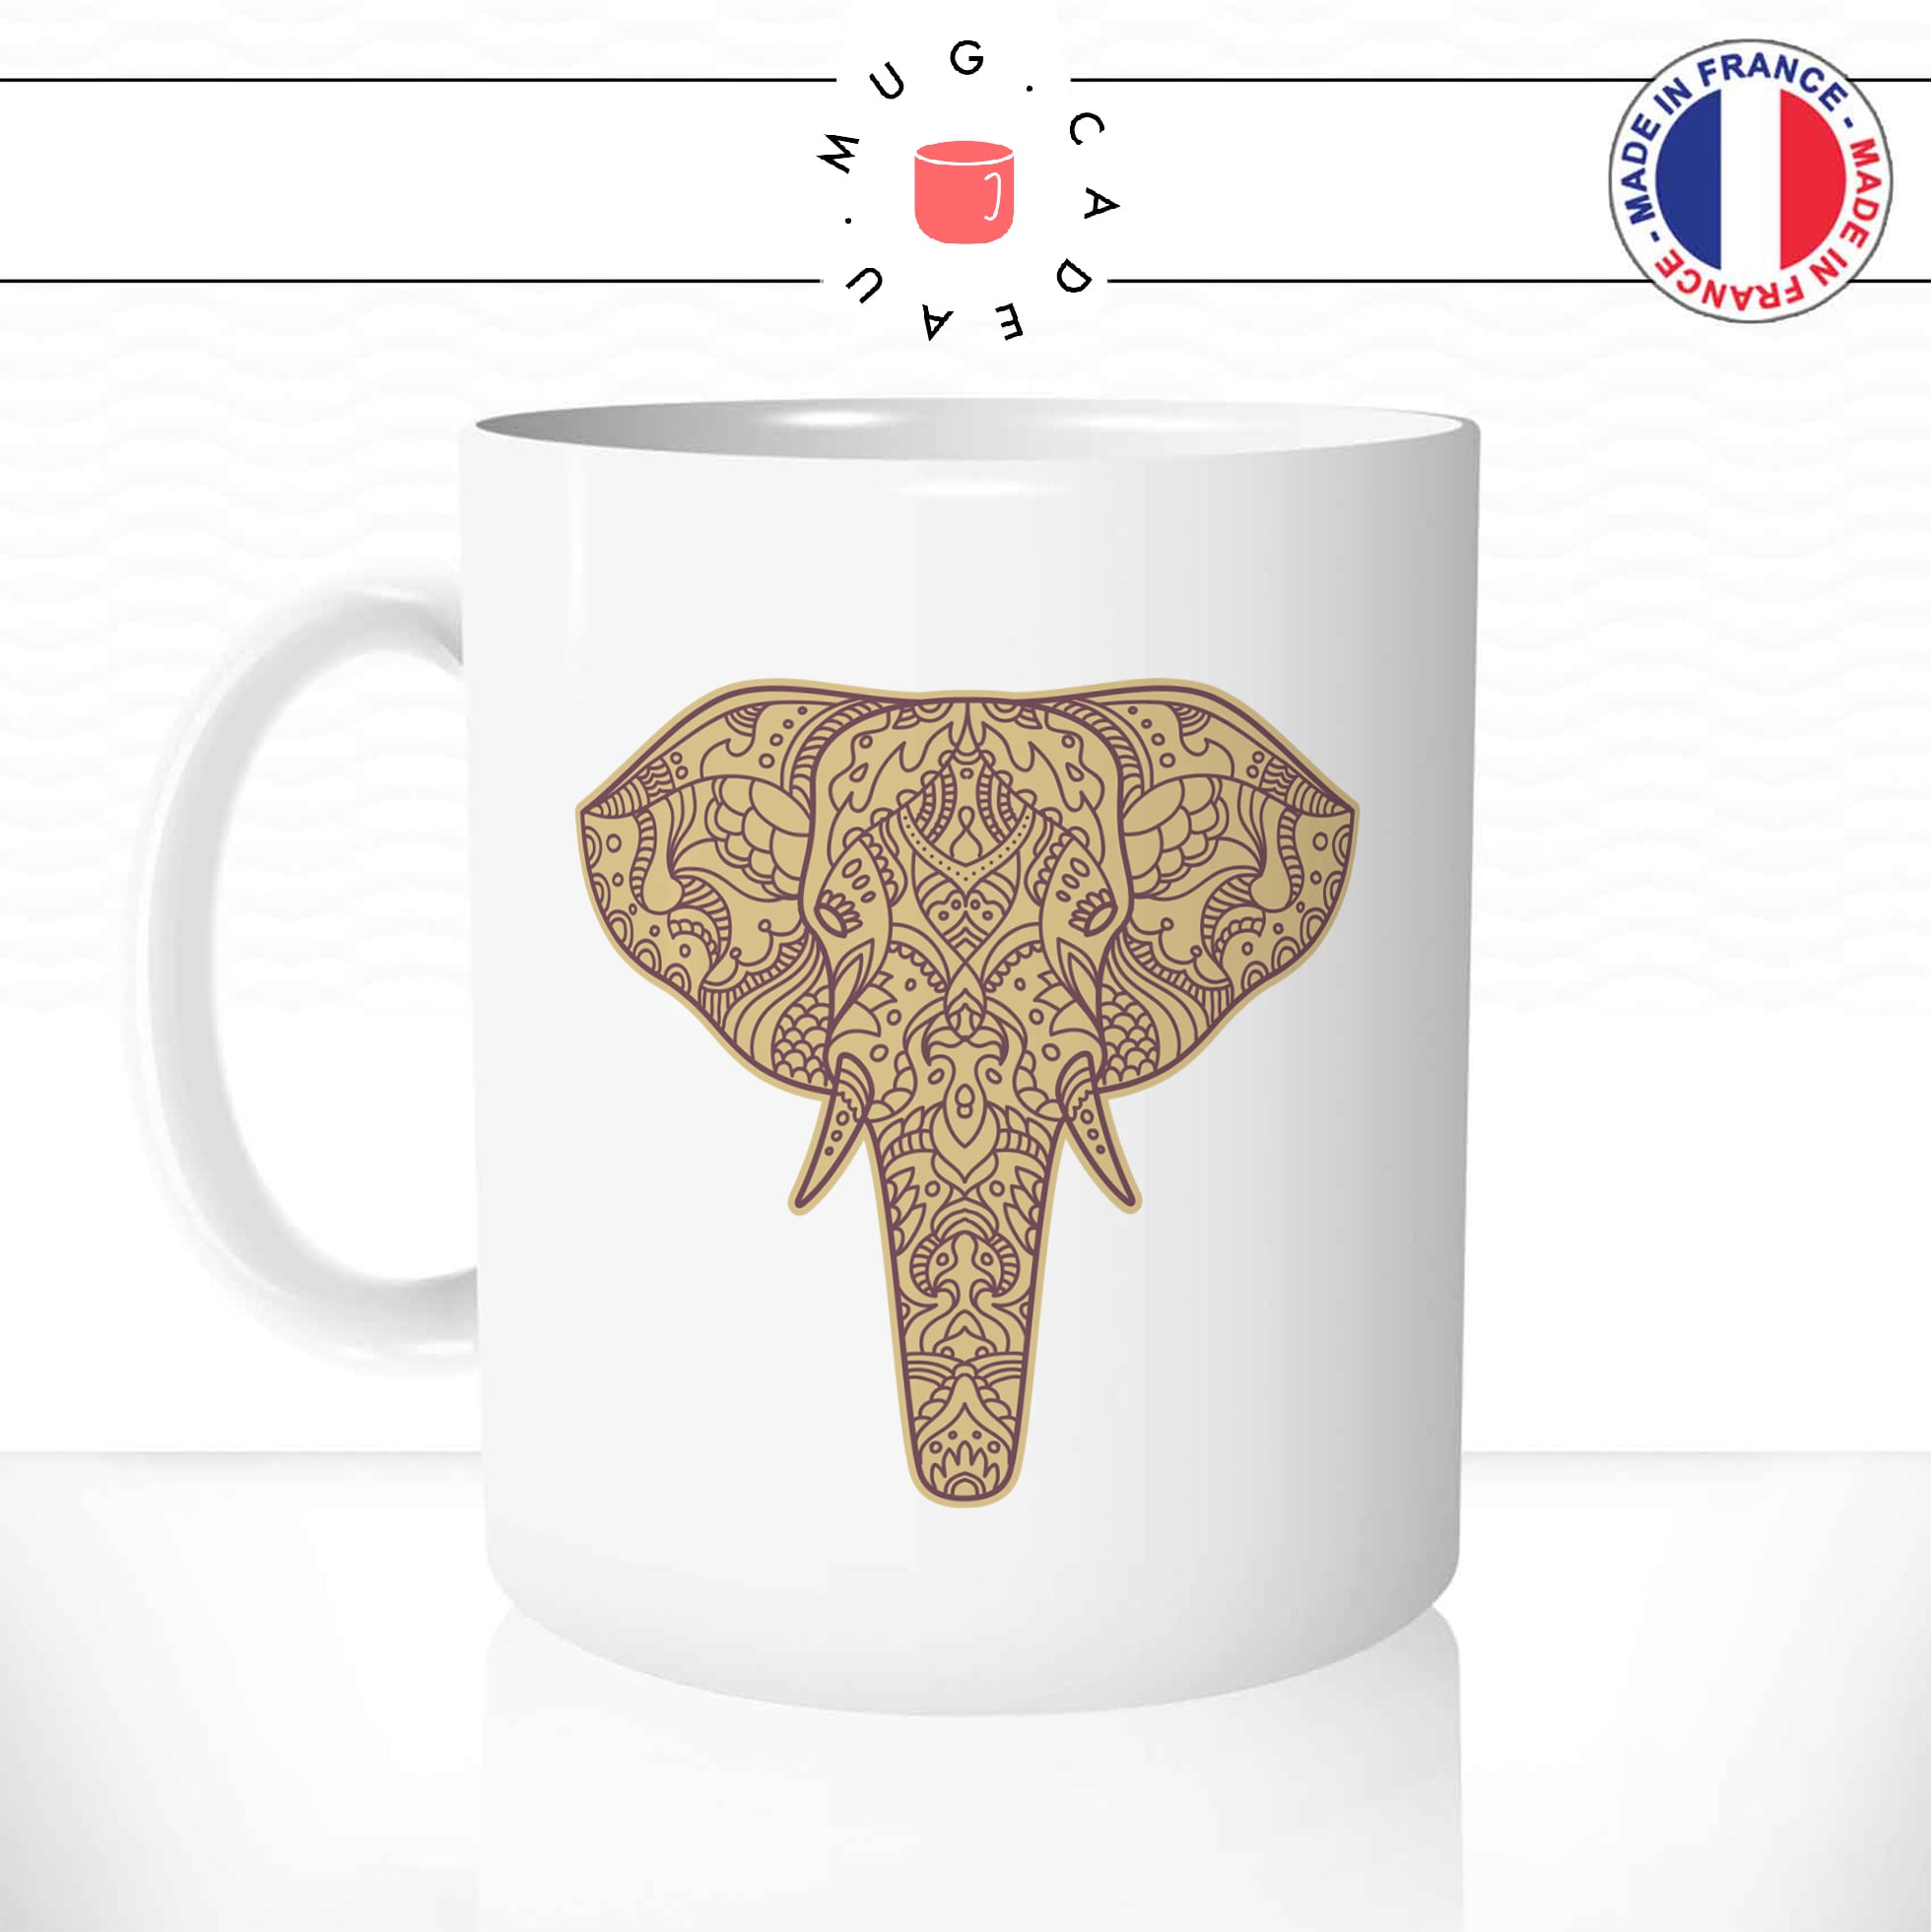 mug-tasse-elephant-dessin-mandala-defenses-ivoir-oreilles-cafe-the-idée-cadeau-personnalisé-original1